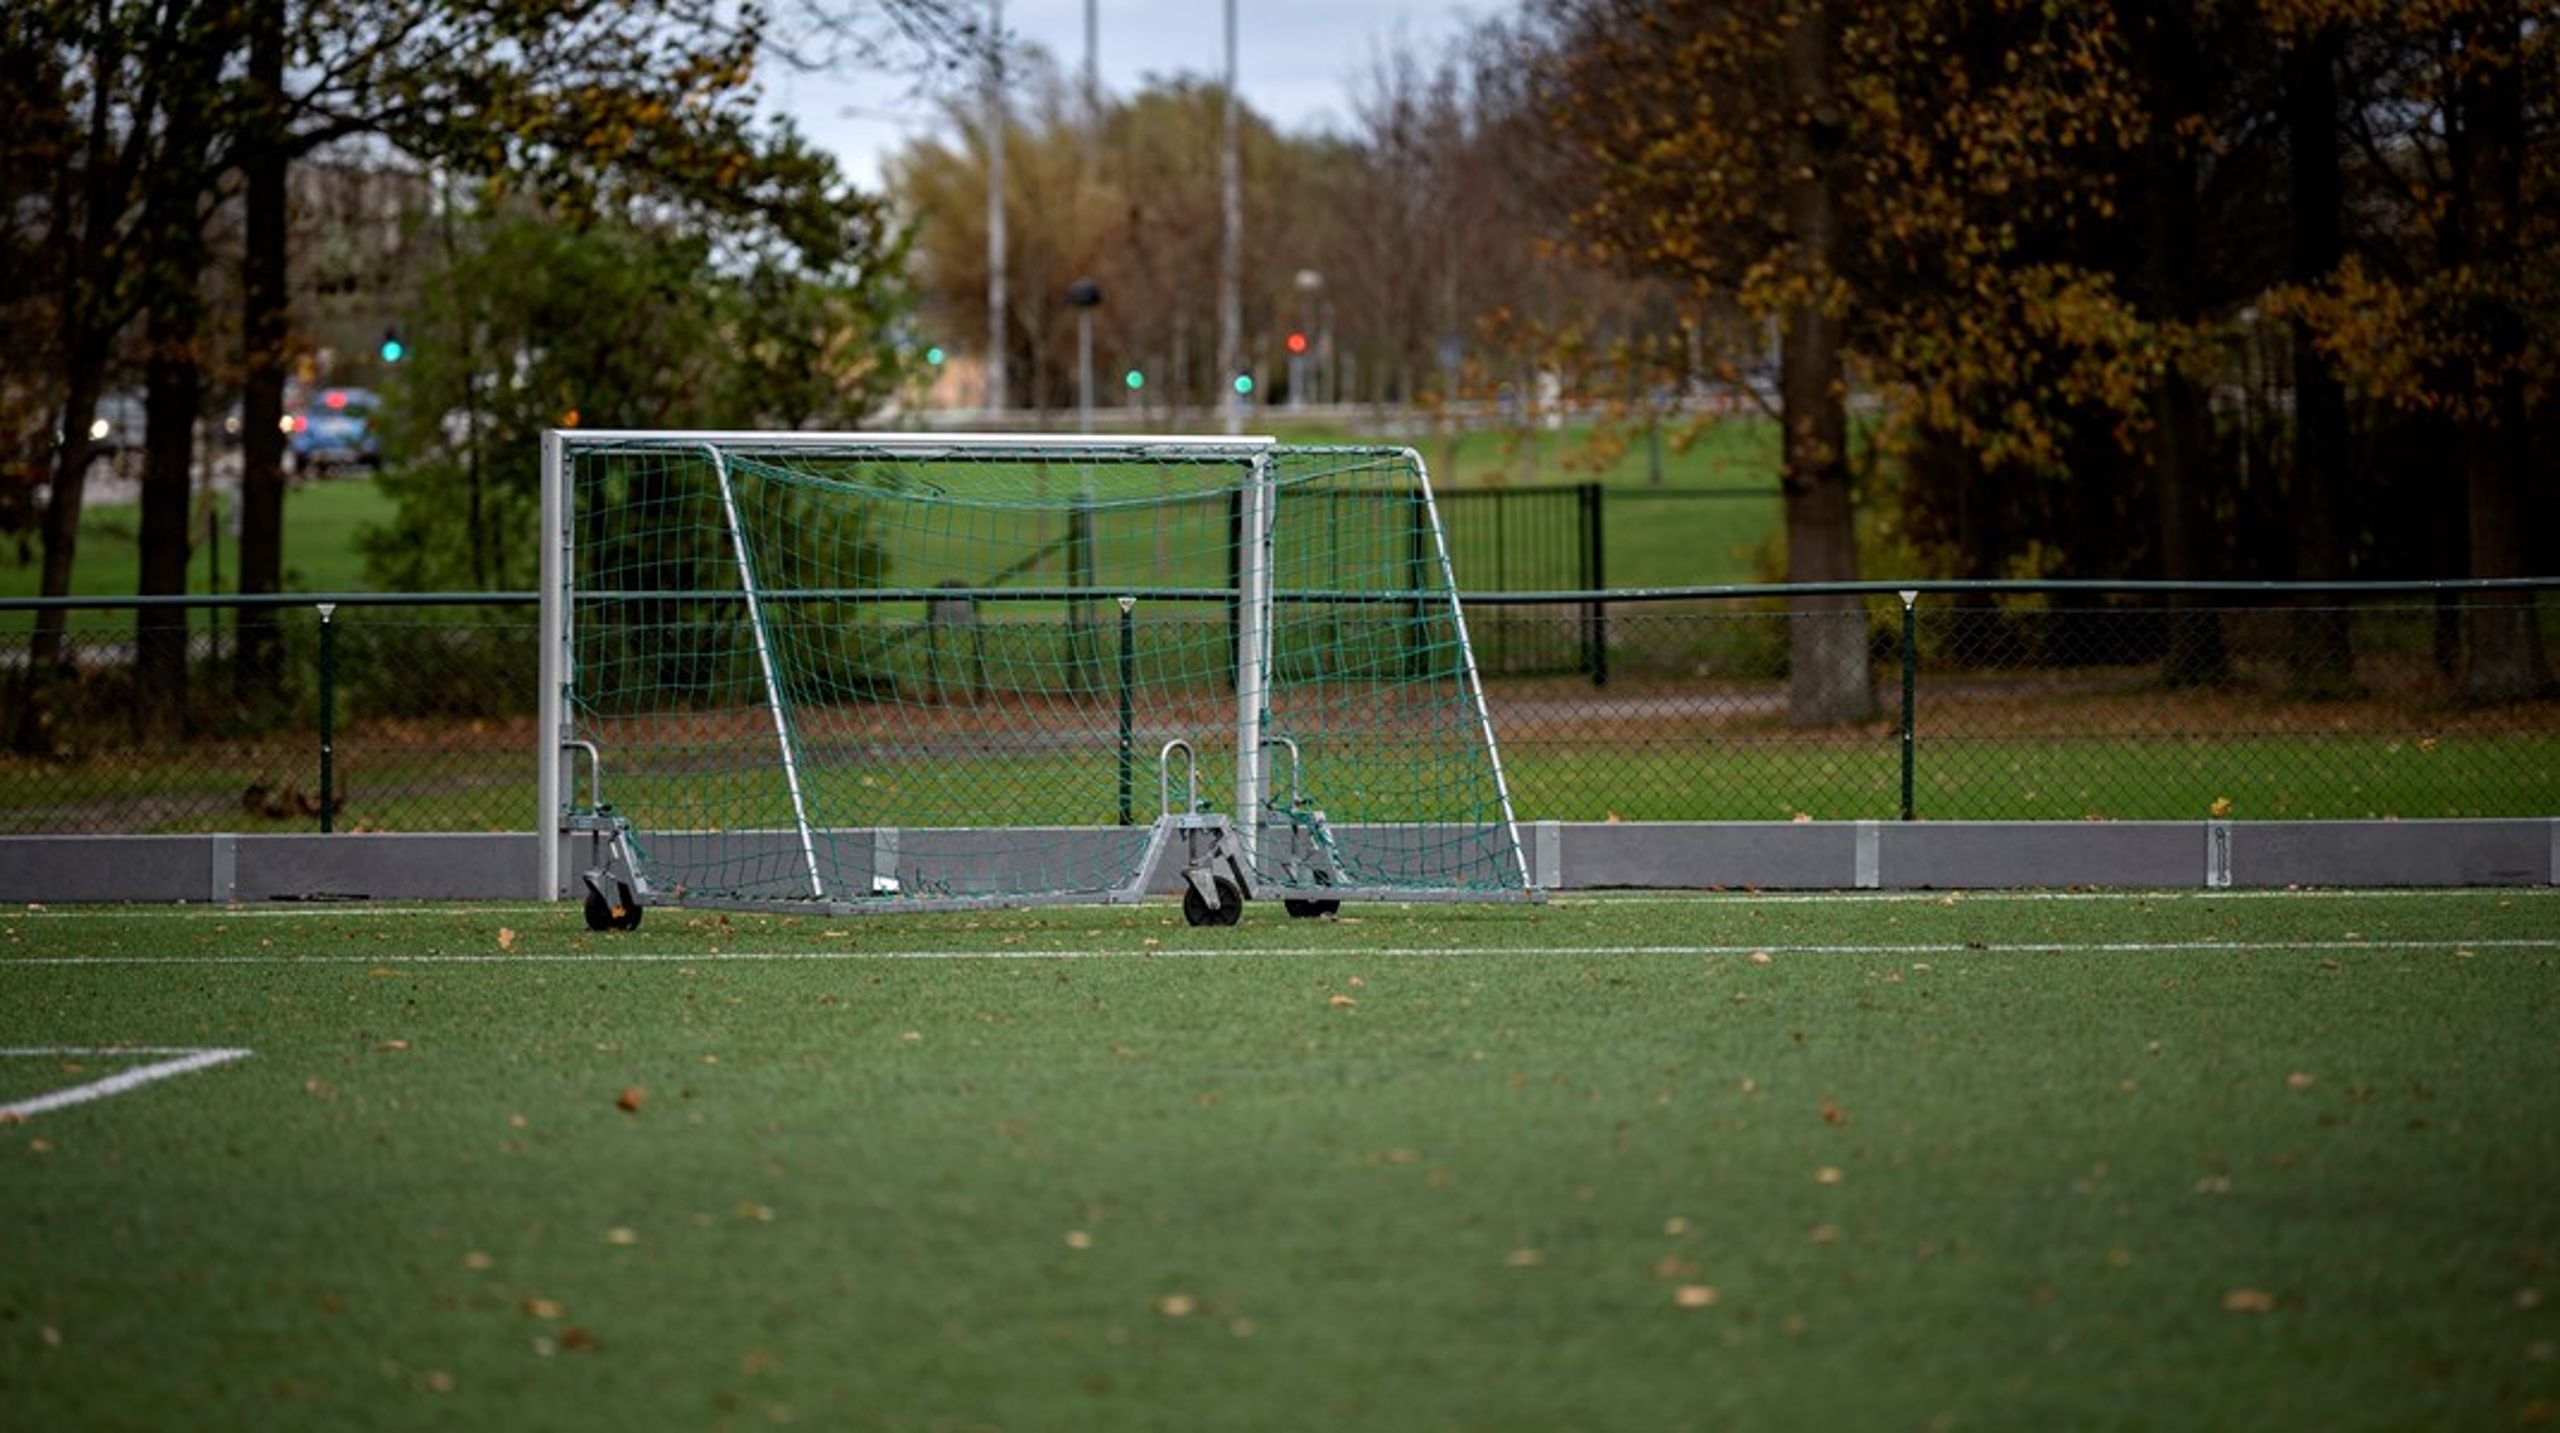 ”Konstgräsplaner möjliggör fotbollsspelande året runt i hela Sverige.”